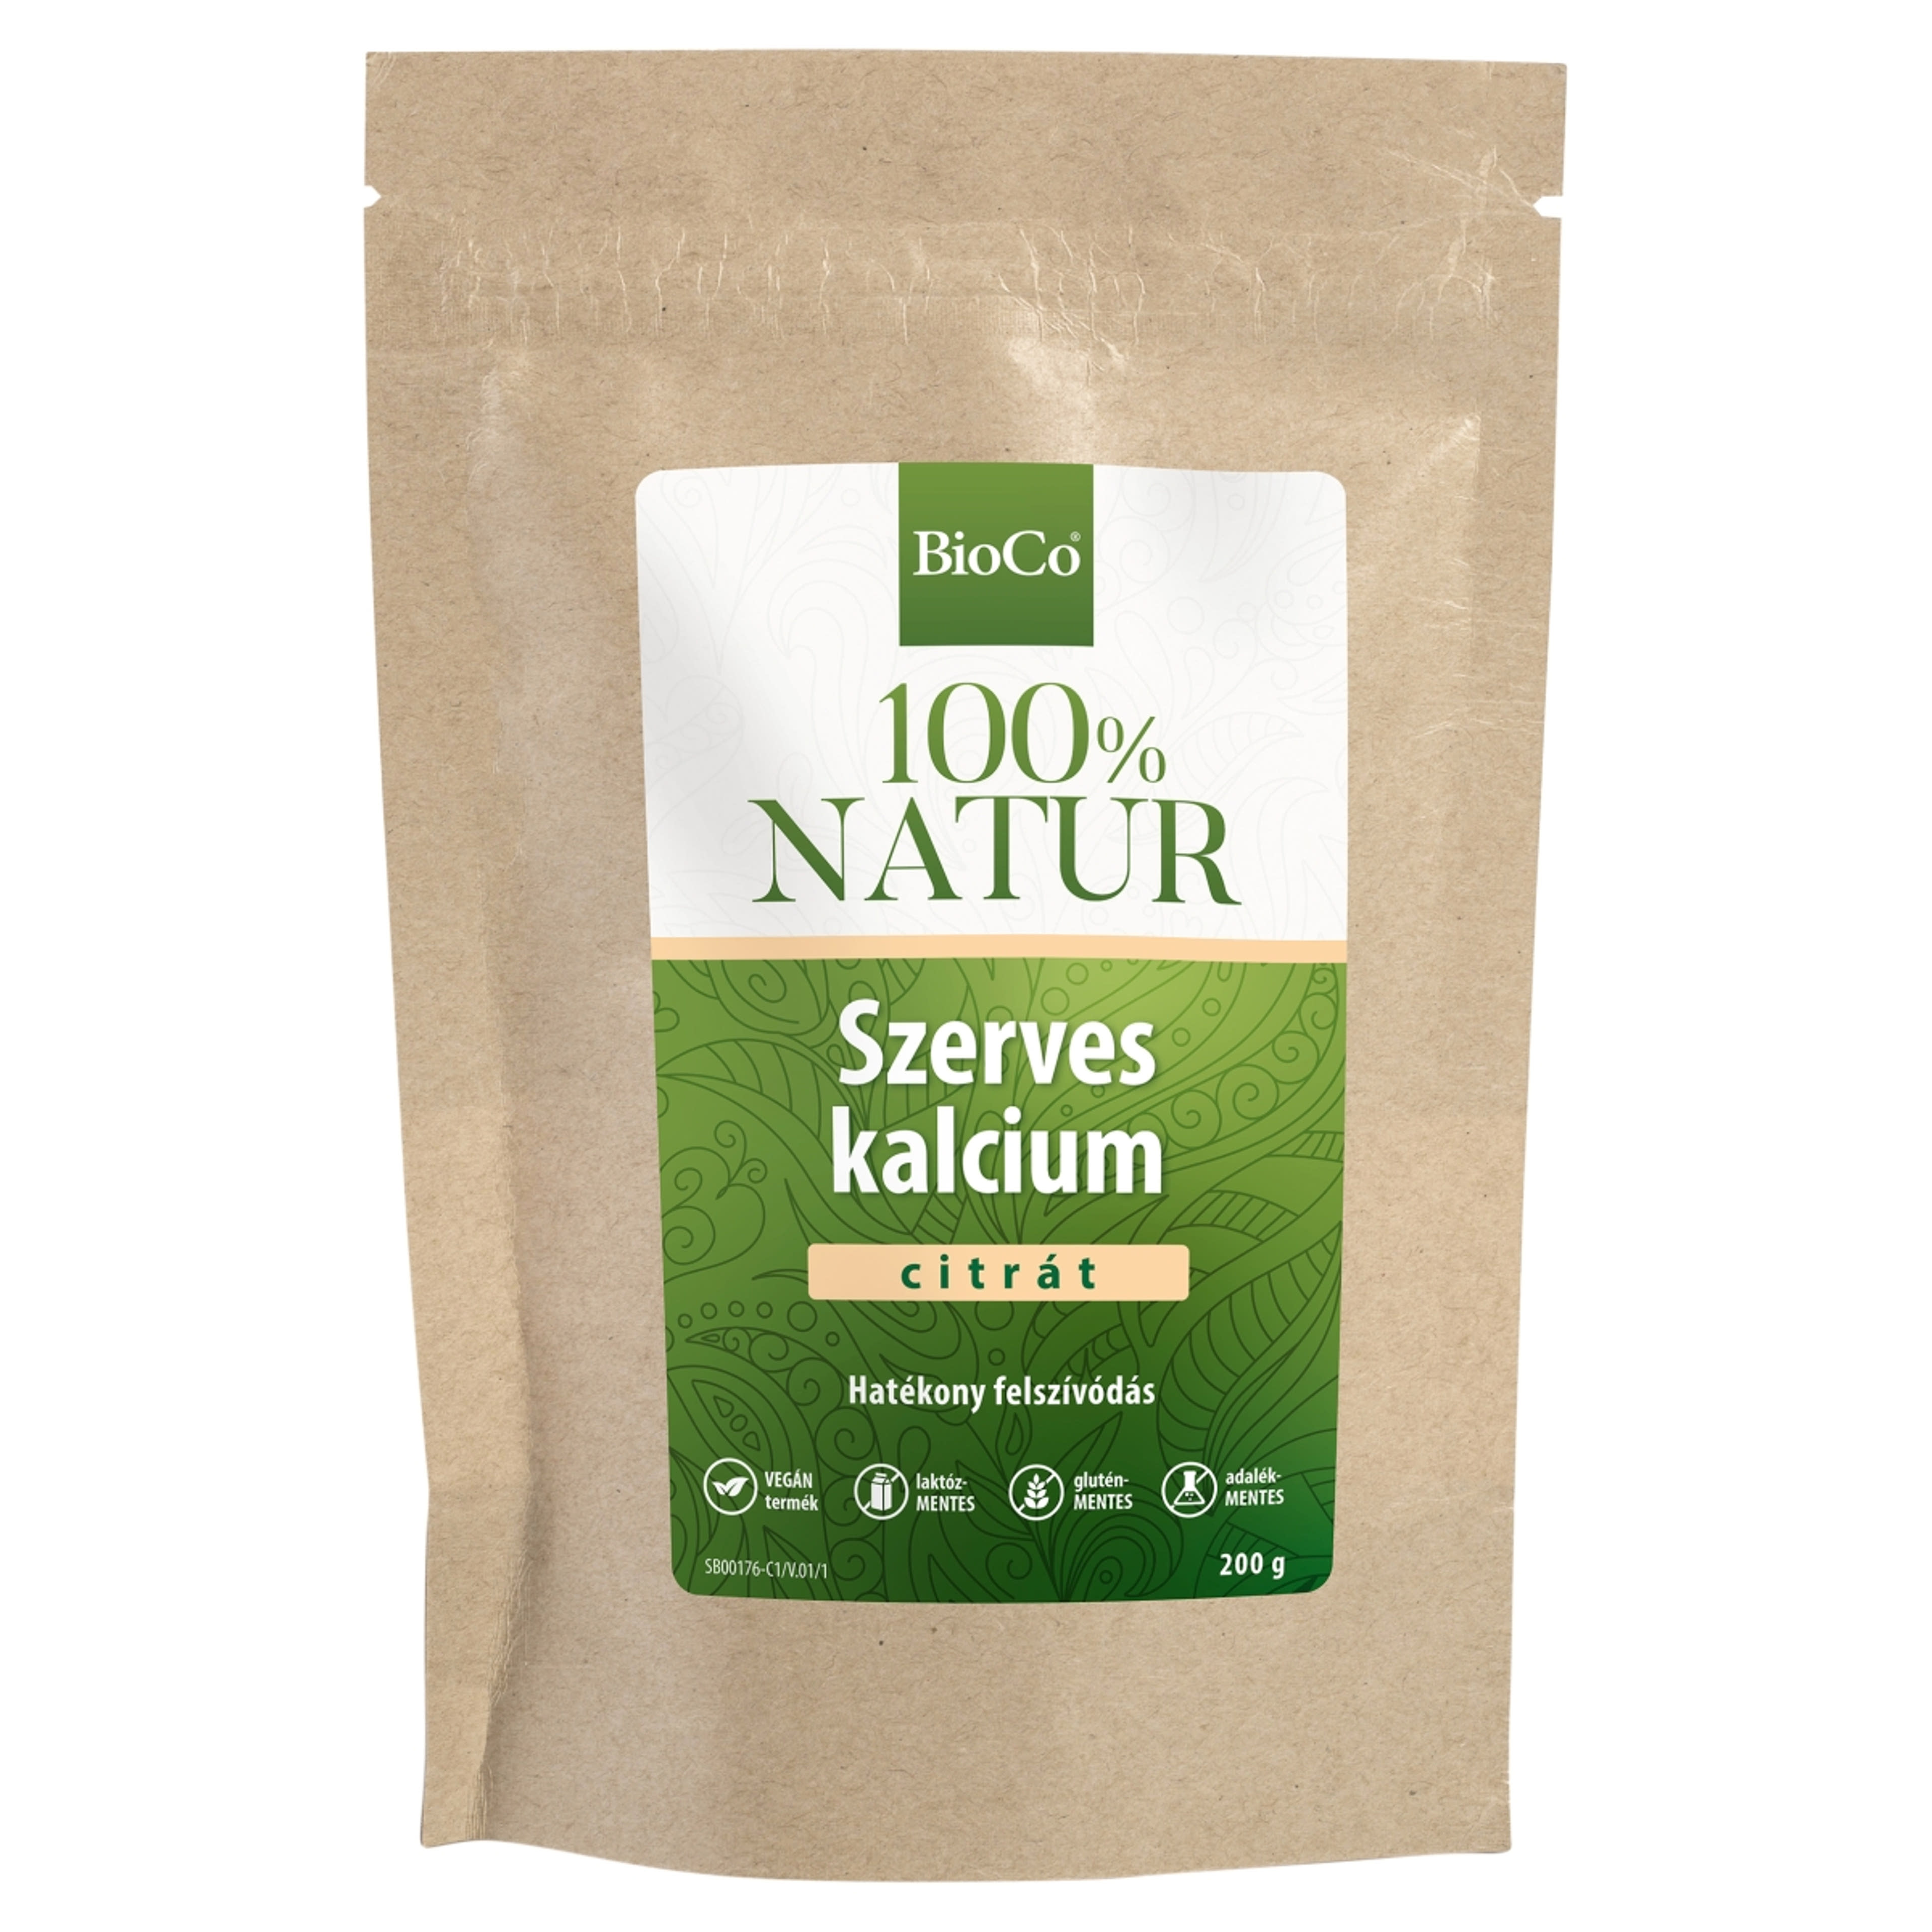 BioCo 100% Natur szerves kalcium-citrát tasakos por - 200 g-1